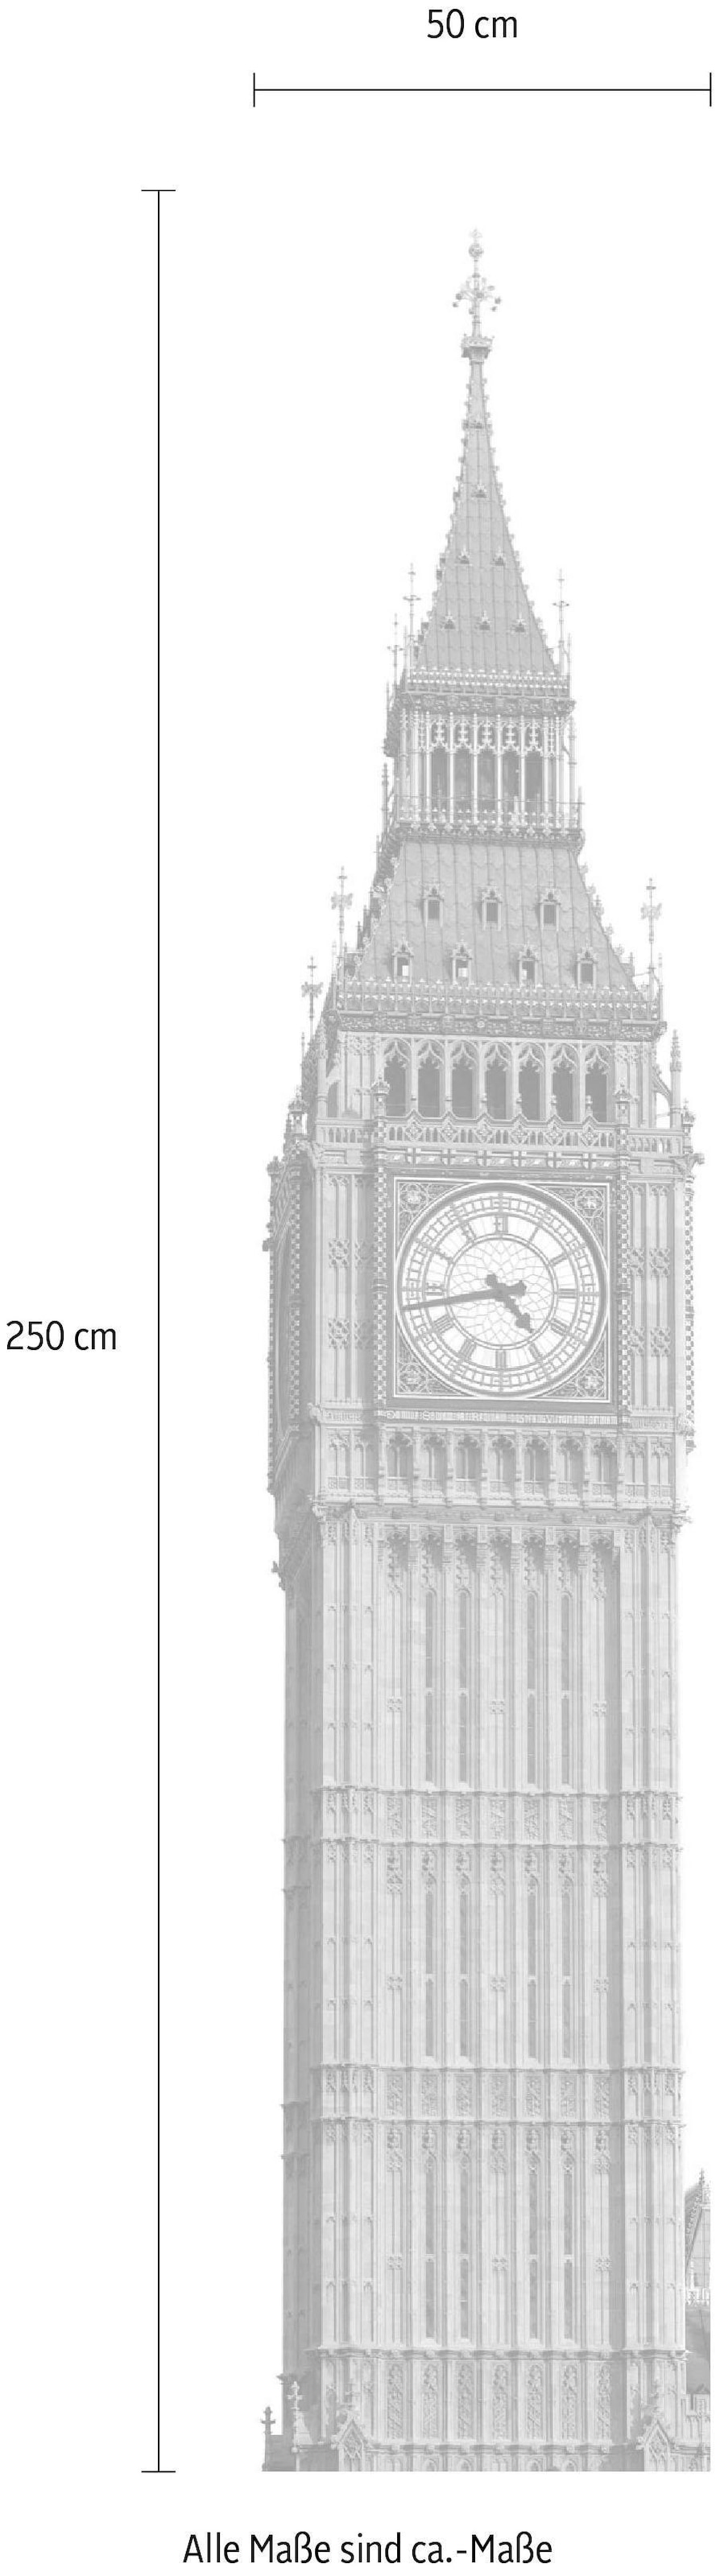 Komar Vliestapete »Big Ben«, 50x250 cm (Breite x Höhe)